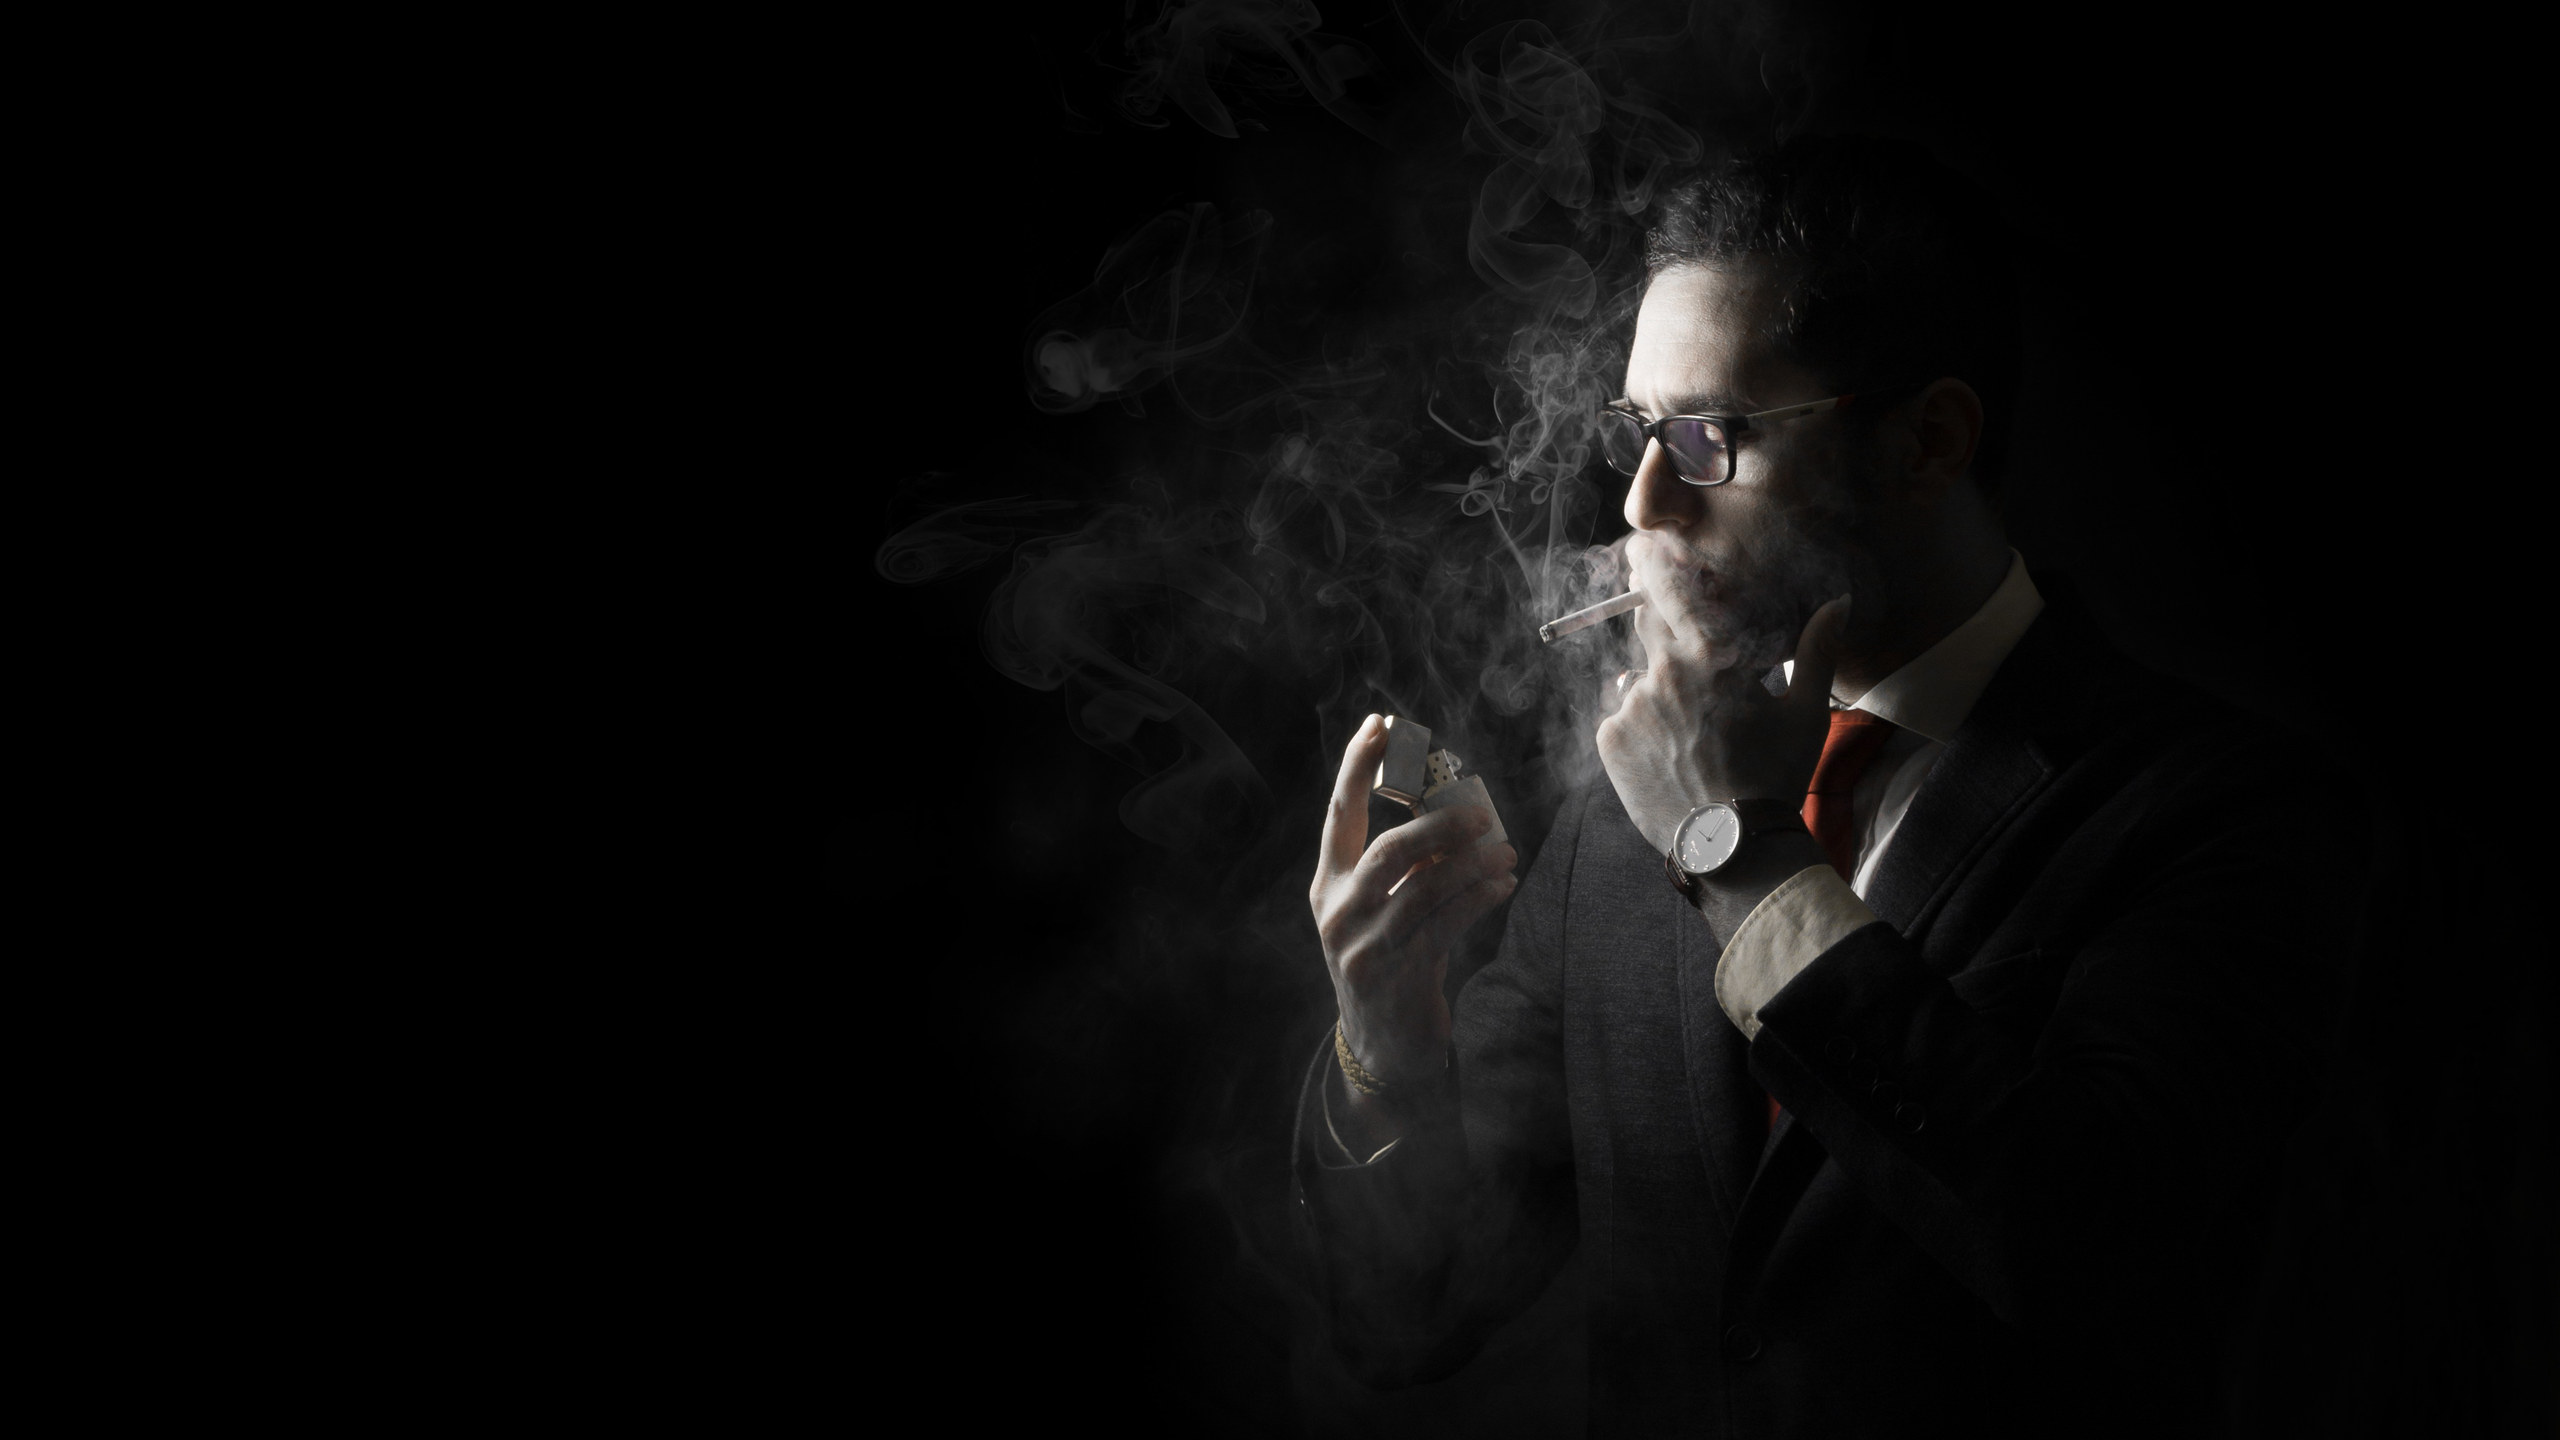 รูปผู้ชายสูบบุหรี่ซิการ์, HD รูปภาพผู้ใหญ่ผู้ชายผู้ชายผู้ชายหล่อหล่อ ...